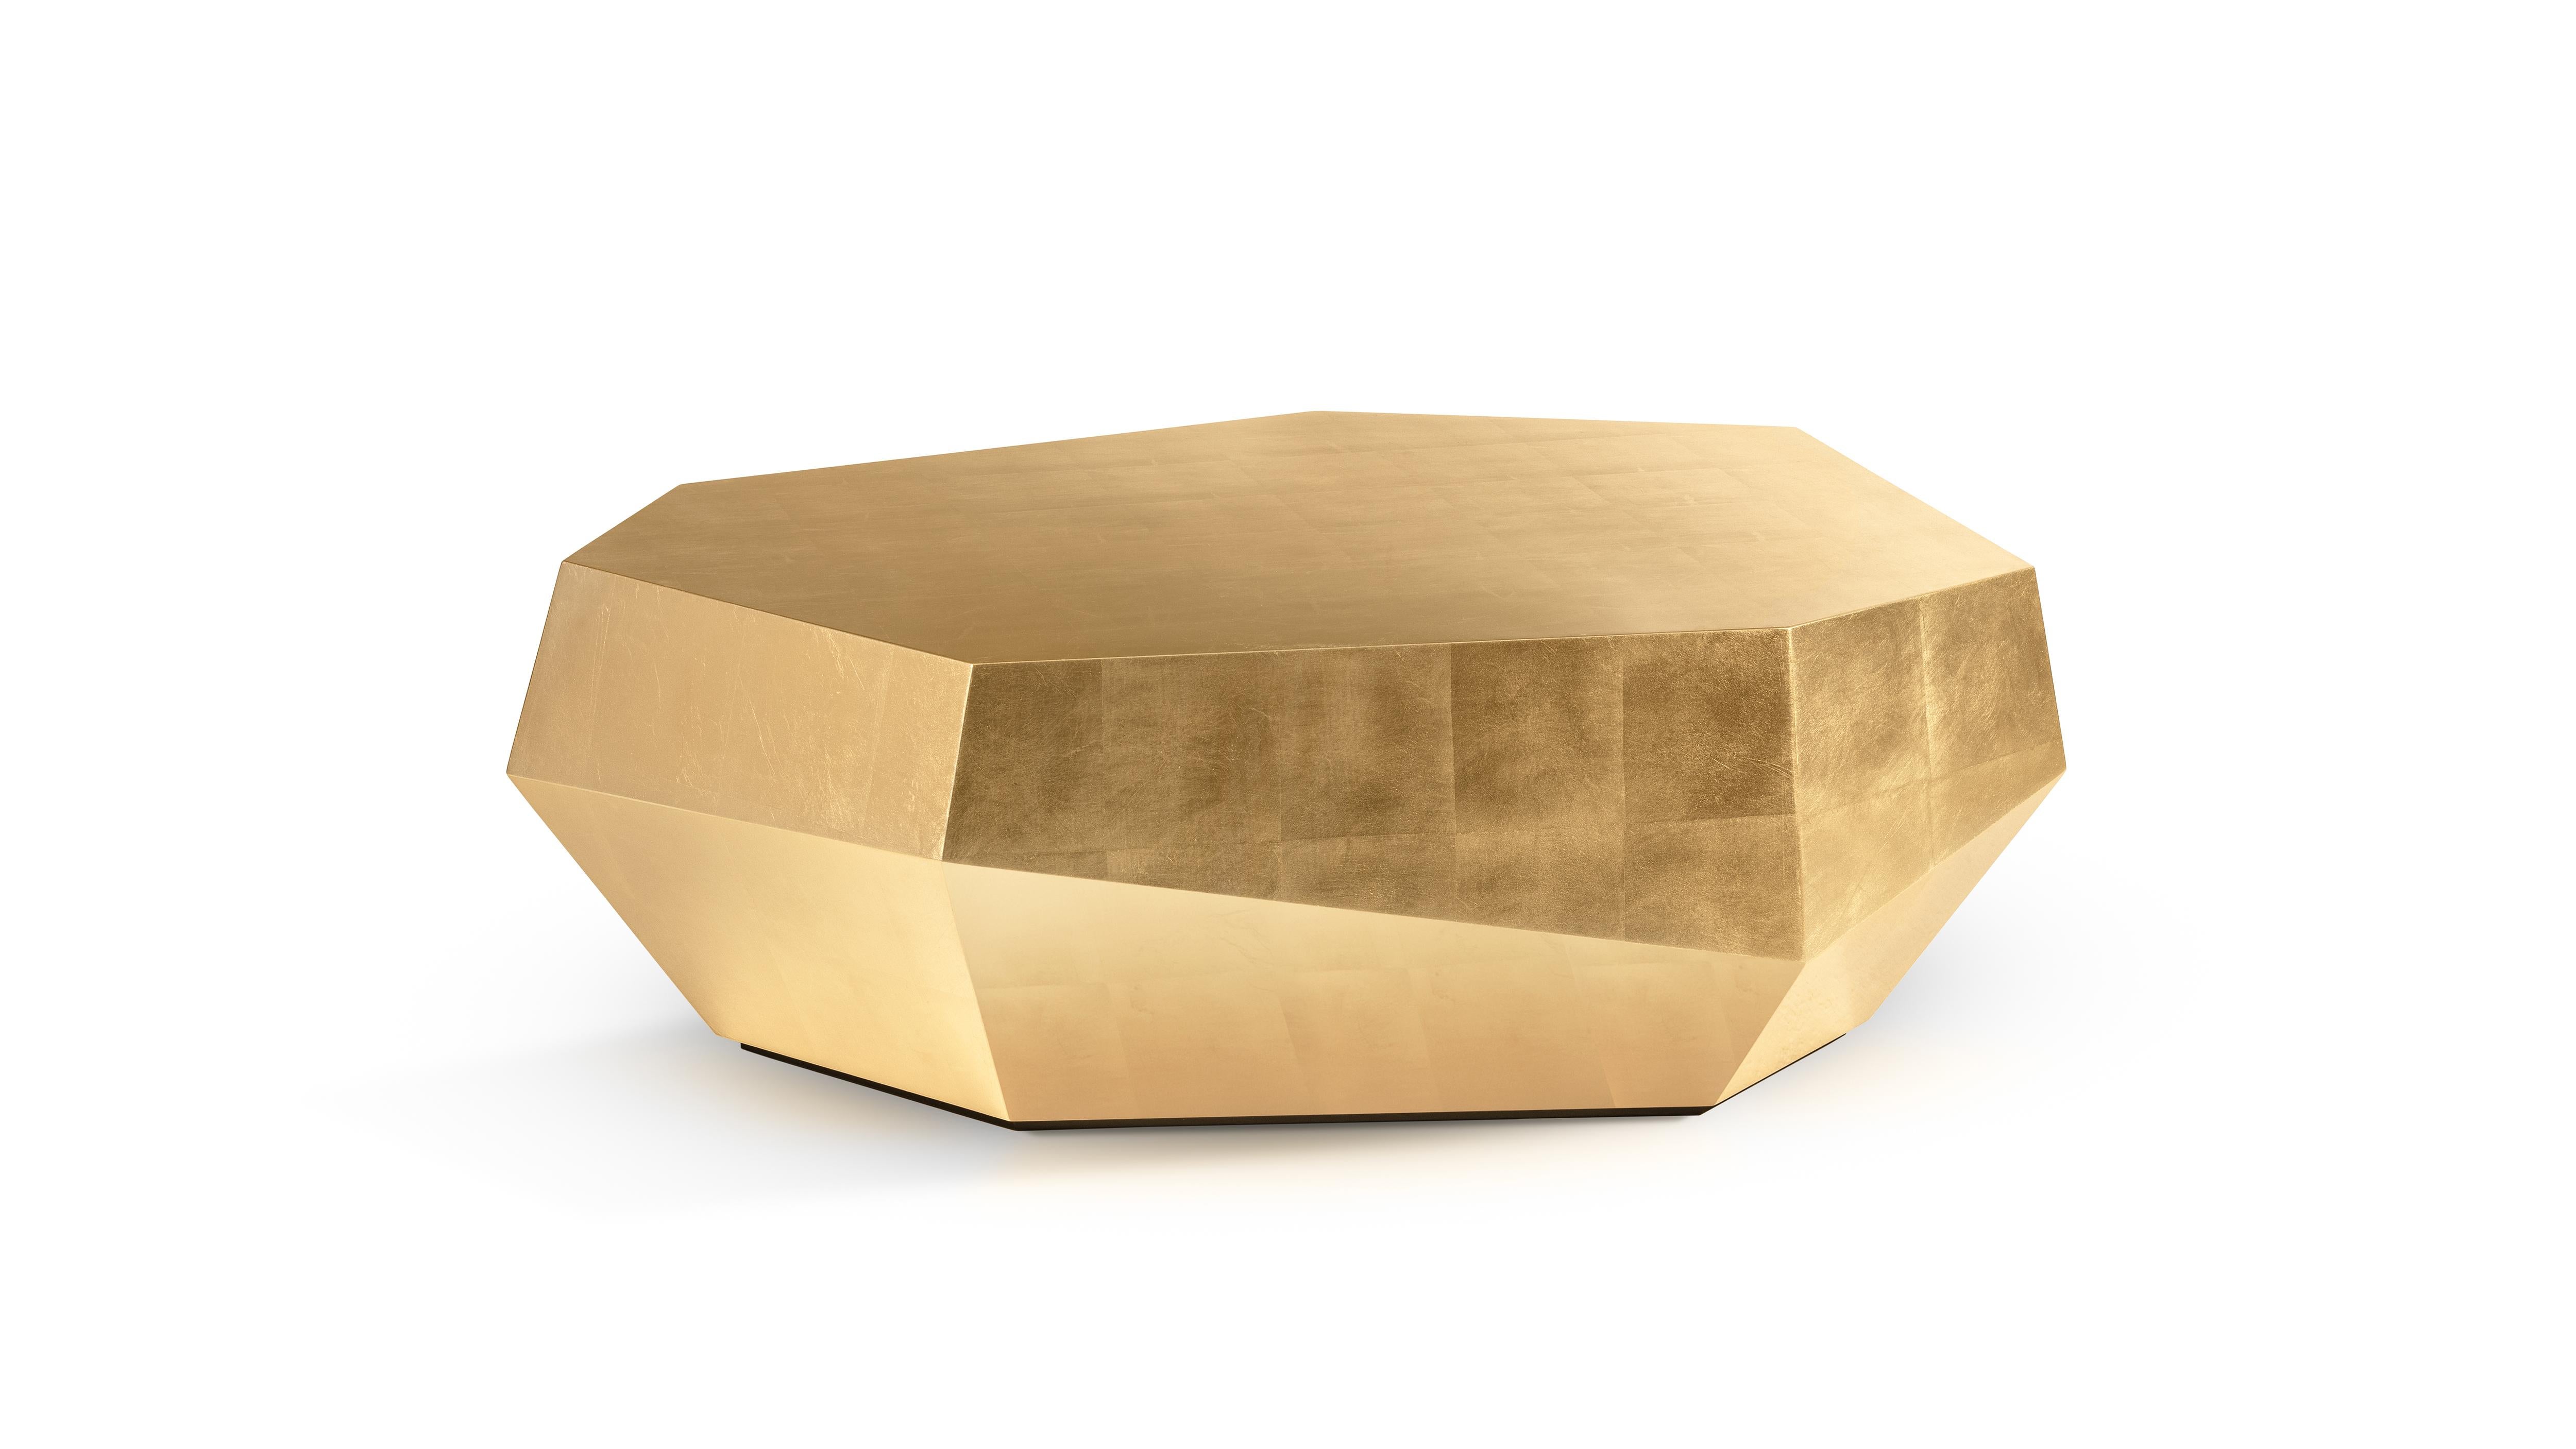 Table basse Three Rocks Gold Leaf d'InsidherLand
Dimensions : D 75 x L 112 x H 37 cm.
MATERIAL : Feuille d'or.
19 kg.
Autres matériaux disponibles.

Depuis l'Arbre spécial, les feuilles tombées sur l'eau reflétaient les visages des deux amoureux